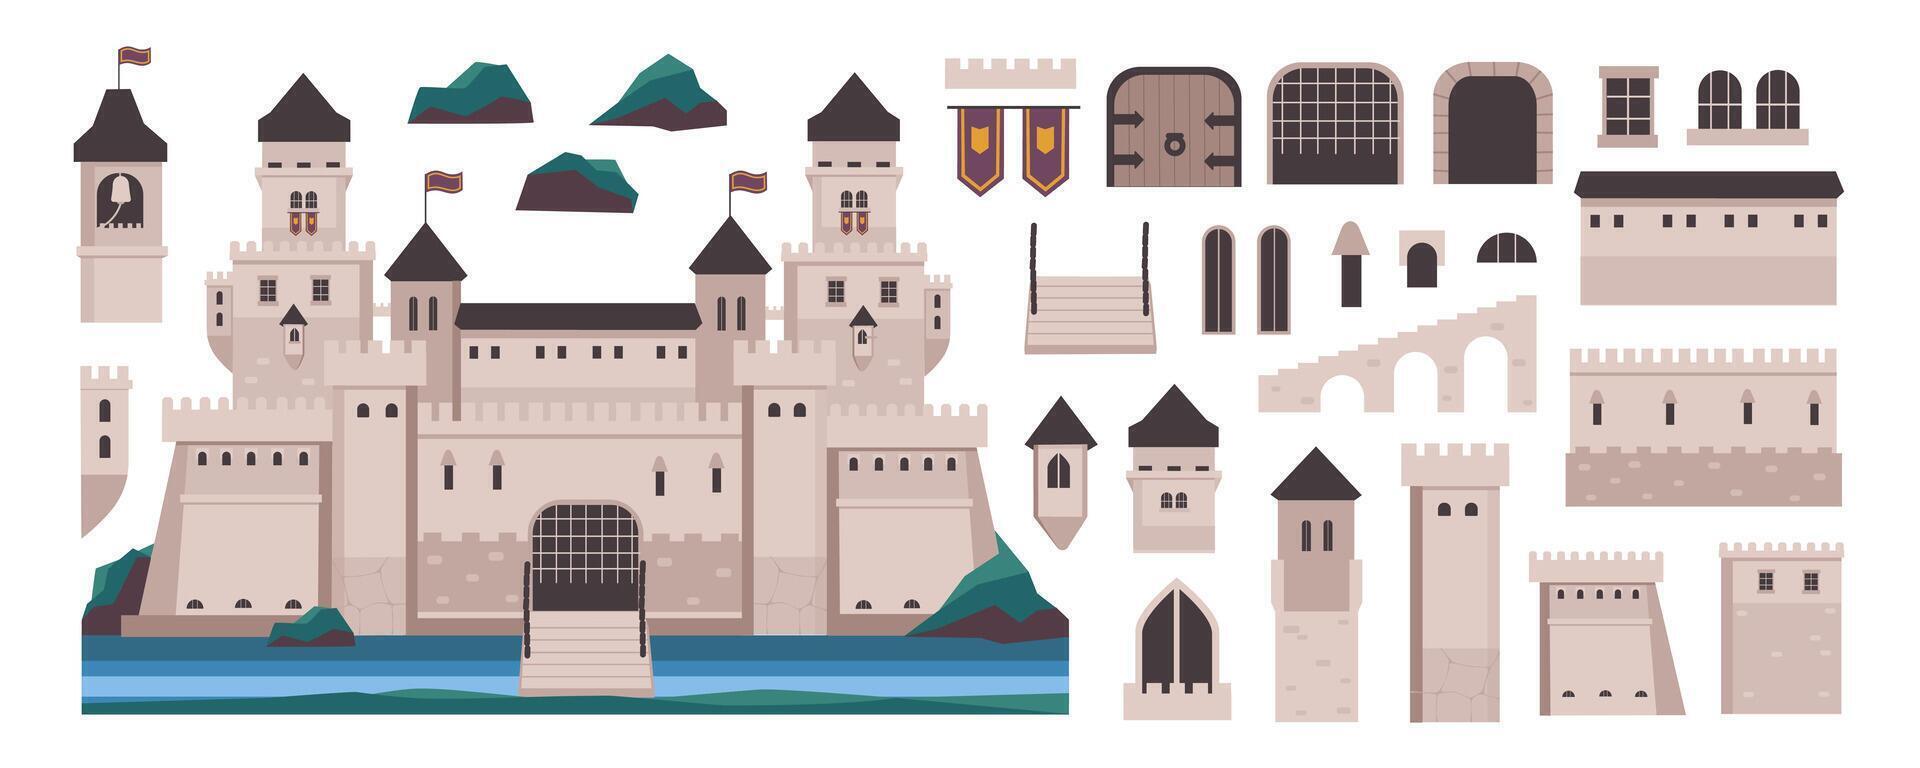 middeleeuws kasteel elementen bouwer mega reeks in vlak grafisch ontwerp. Schepper uitrusting met oude koninkrijk paleis buitenkant, poorten, torens, deuren, ramen, vlaggen en bogen, ander. vector illustratie.